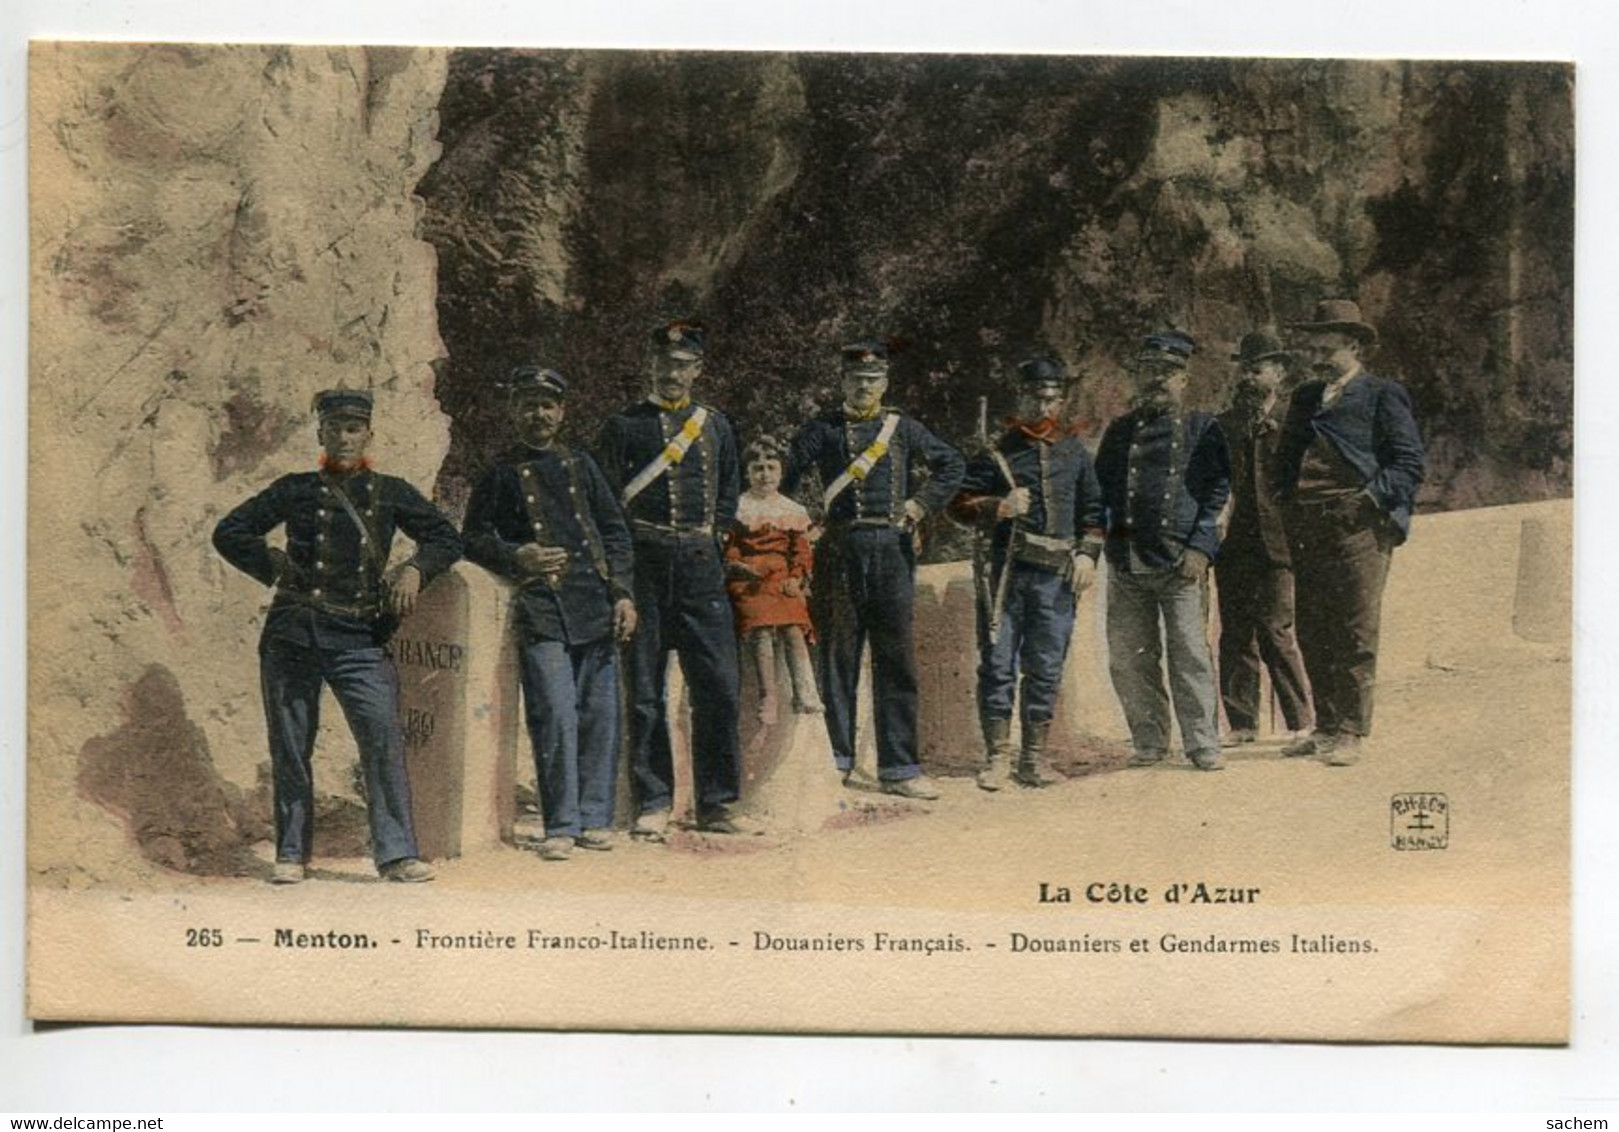 06 MENTON Frontiere Douaniers Francais - Douaniers Et Gendarmes Italiens Couleur 1910 - No 265  D18  2021 - Menton